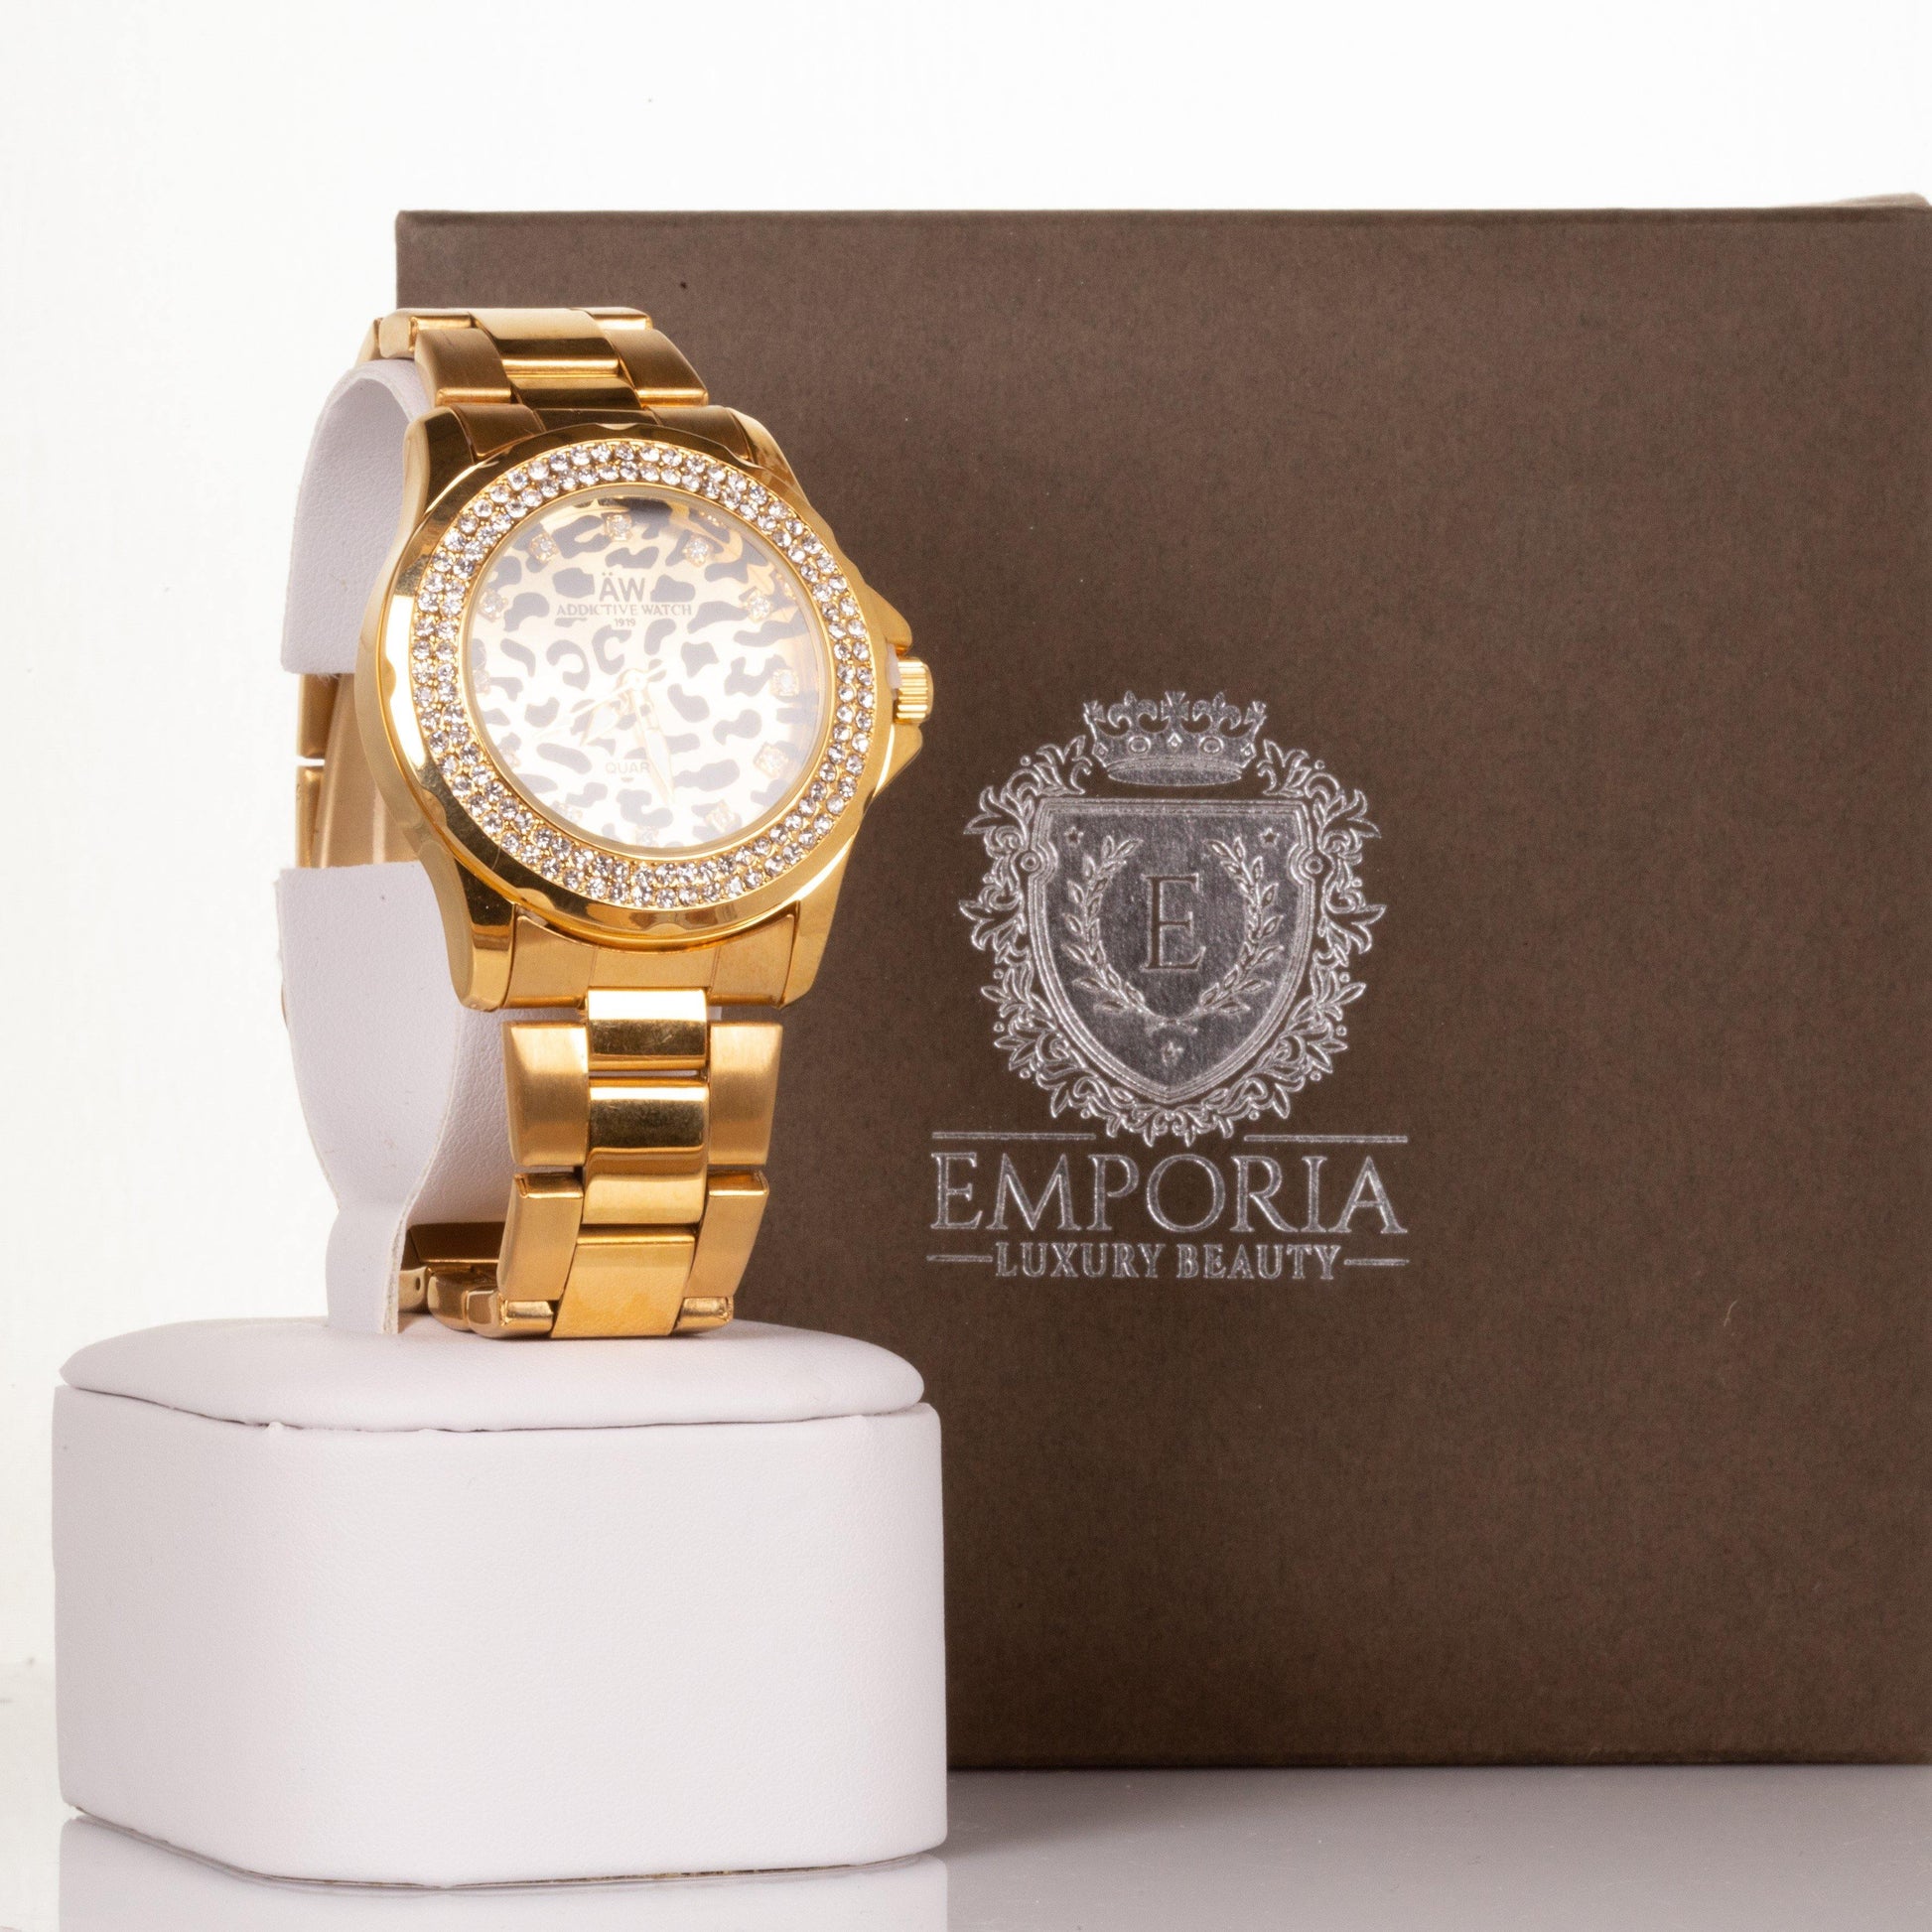 AW dámske hodinky v zlatej farbe, s ciferníkom v leopardím vzoru a s kryštálmi kremeňa - KlenotTV.sk